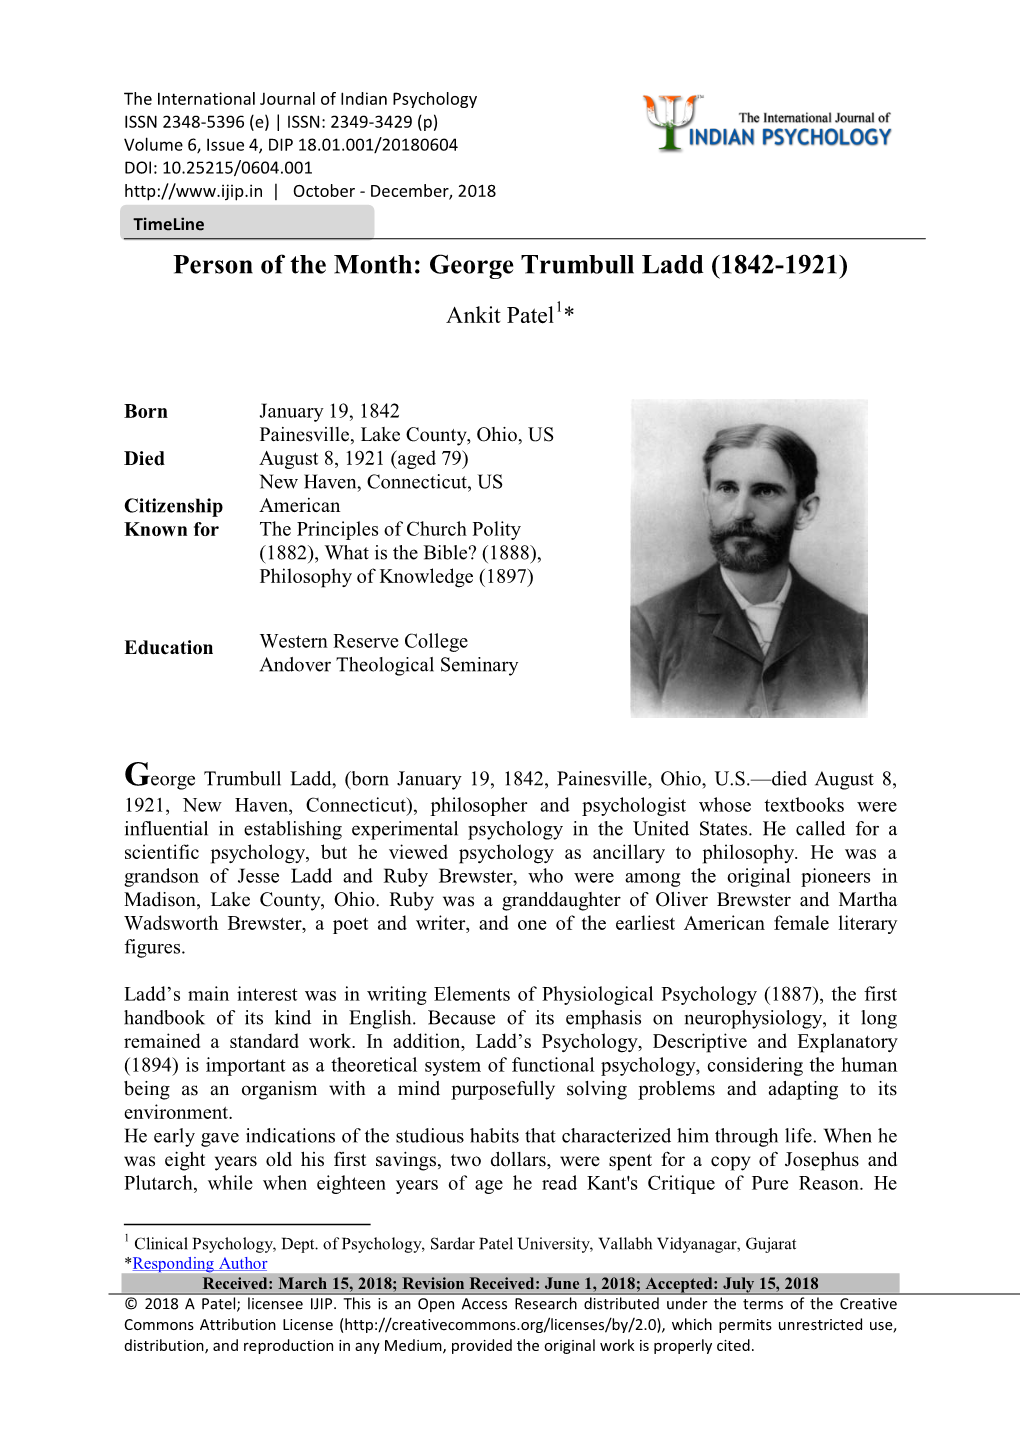 George Trumbull Ladd (1842-1921)